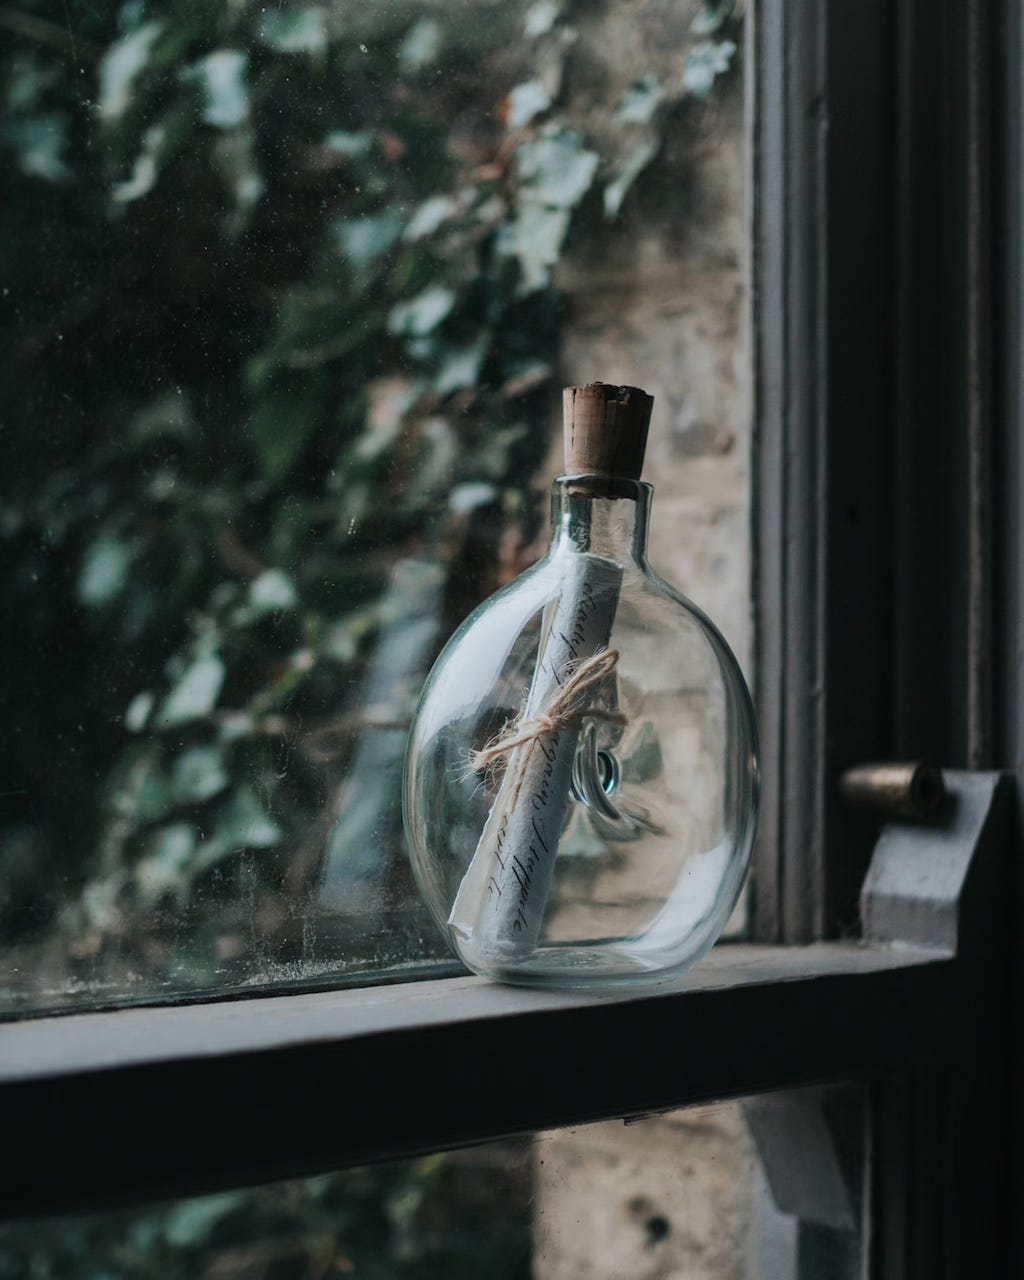 Message in a bottle on a window ledge